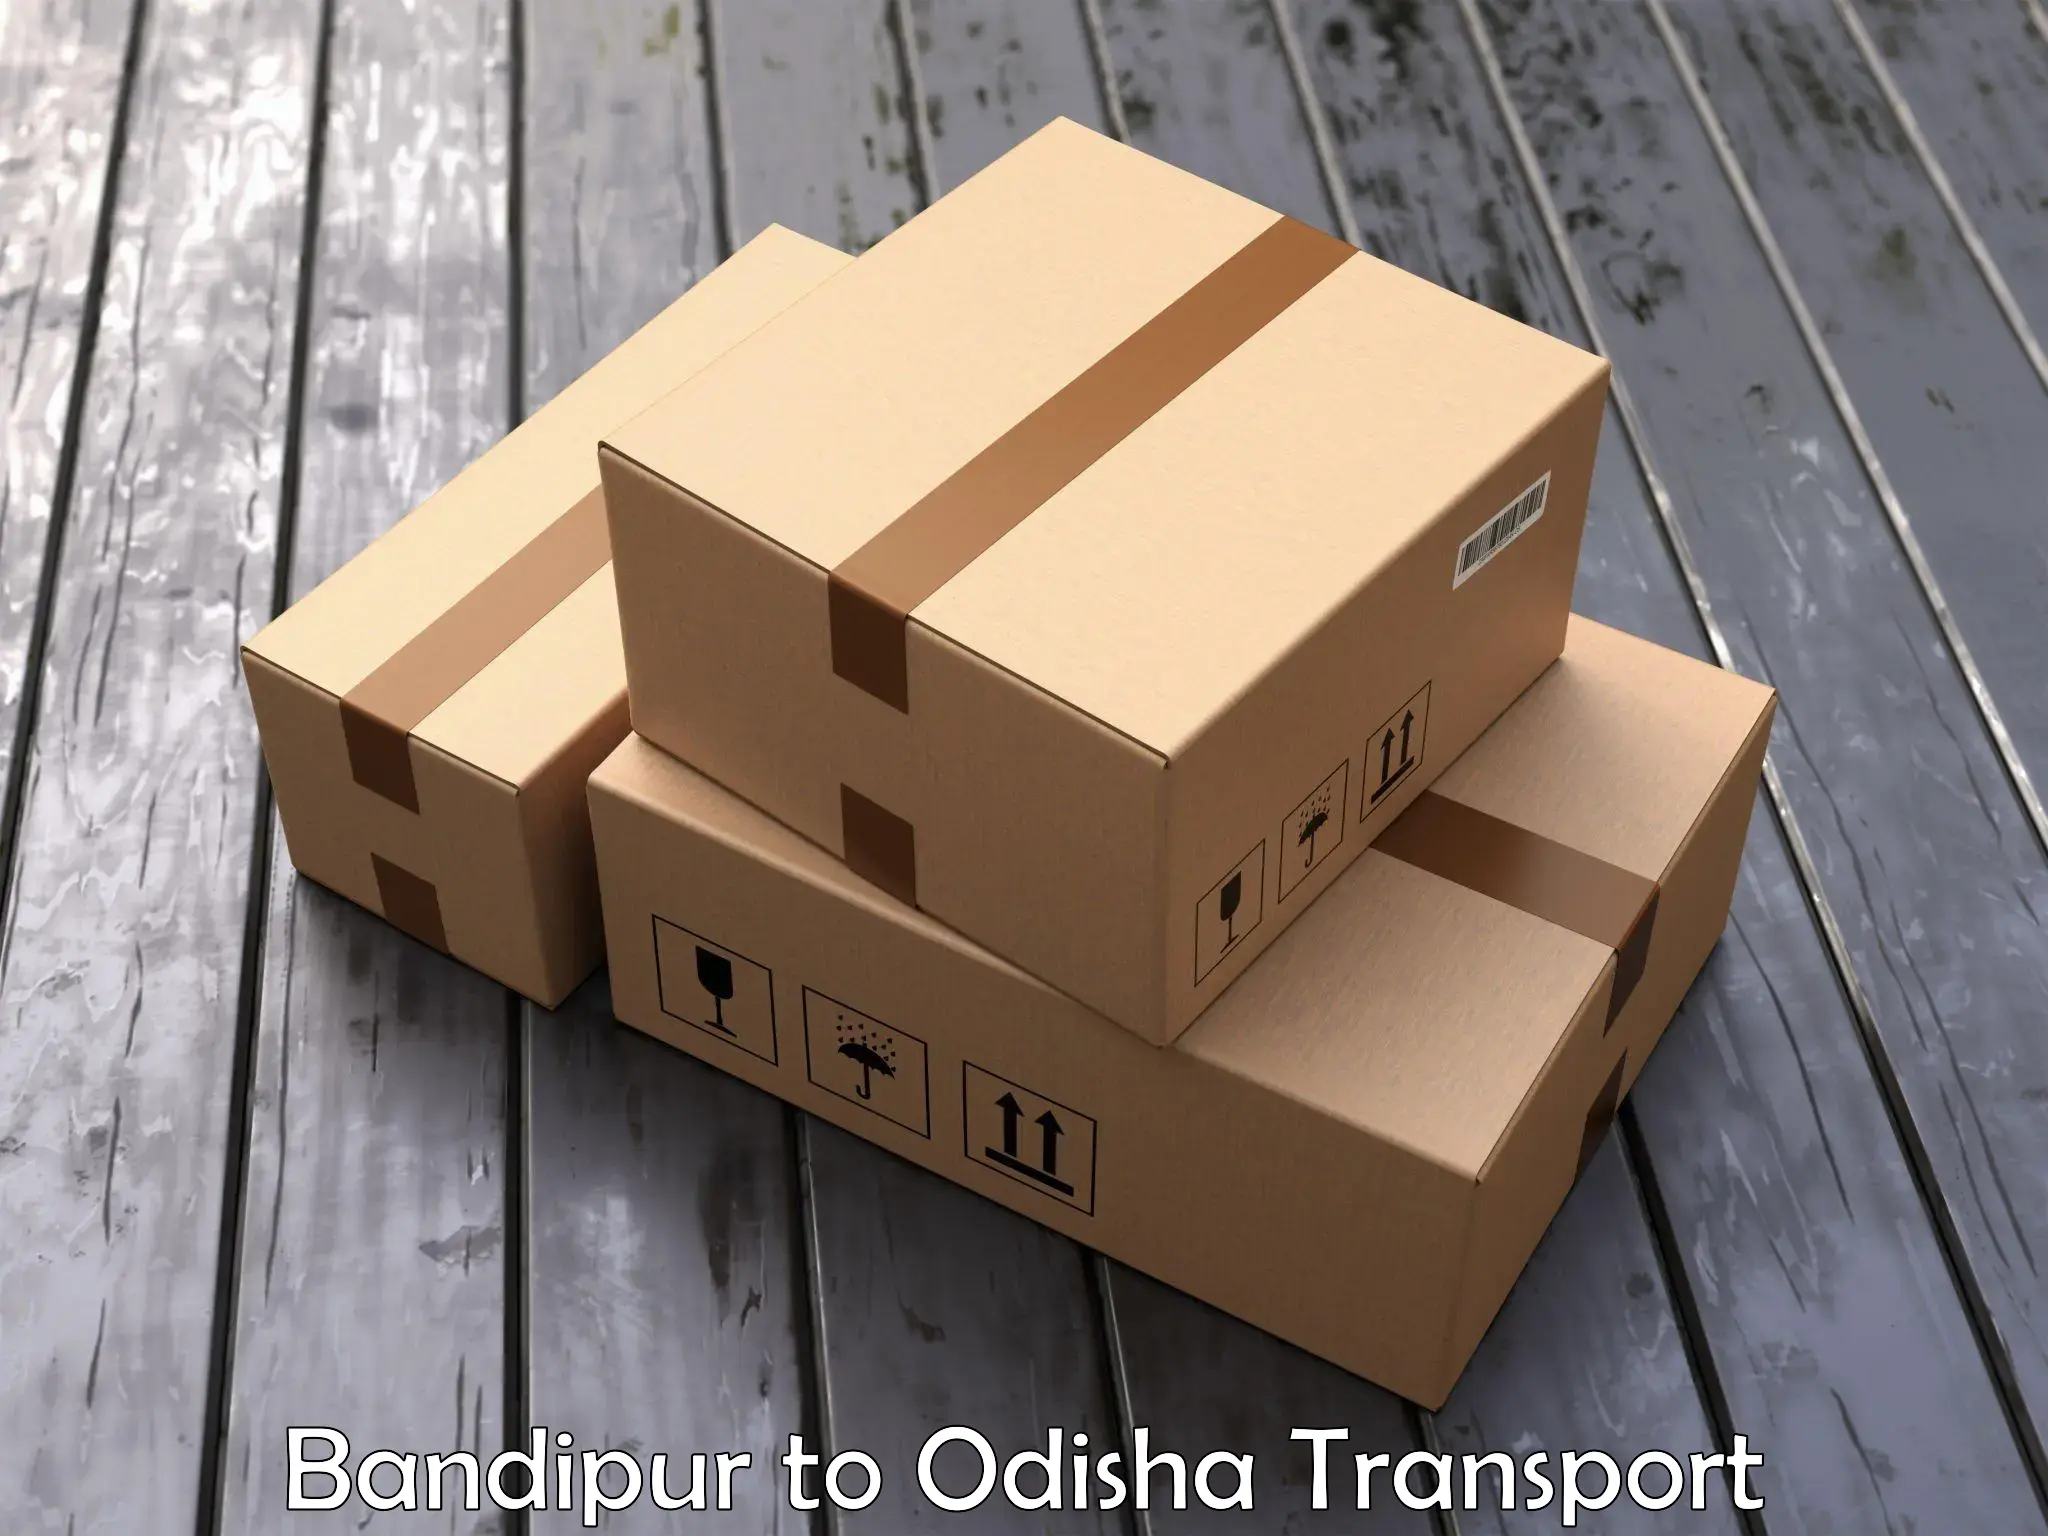 Daily parcel service transport Bandipur to Bangriposi